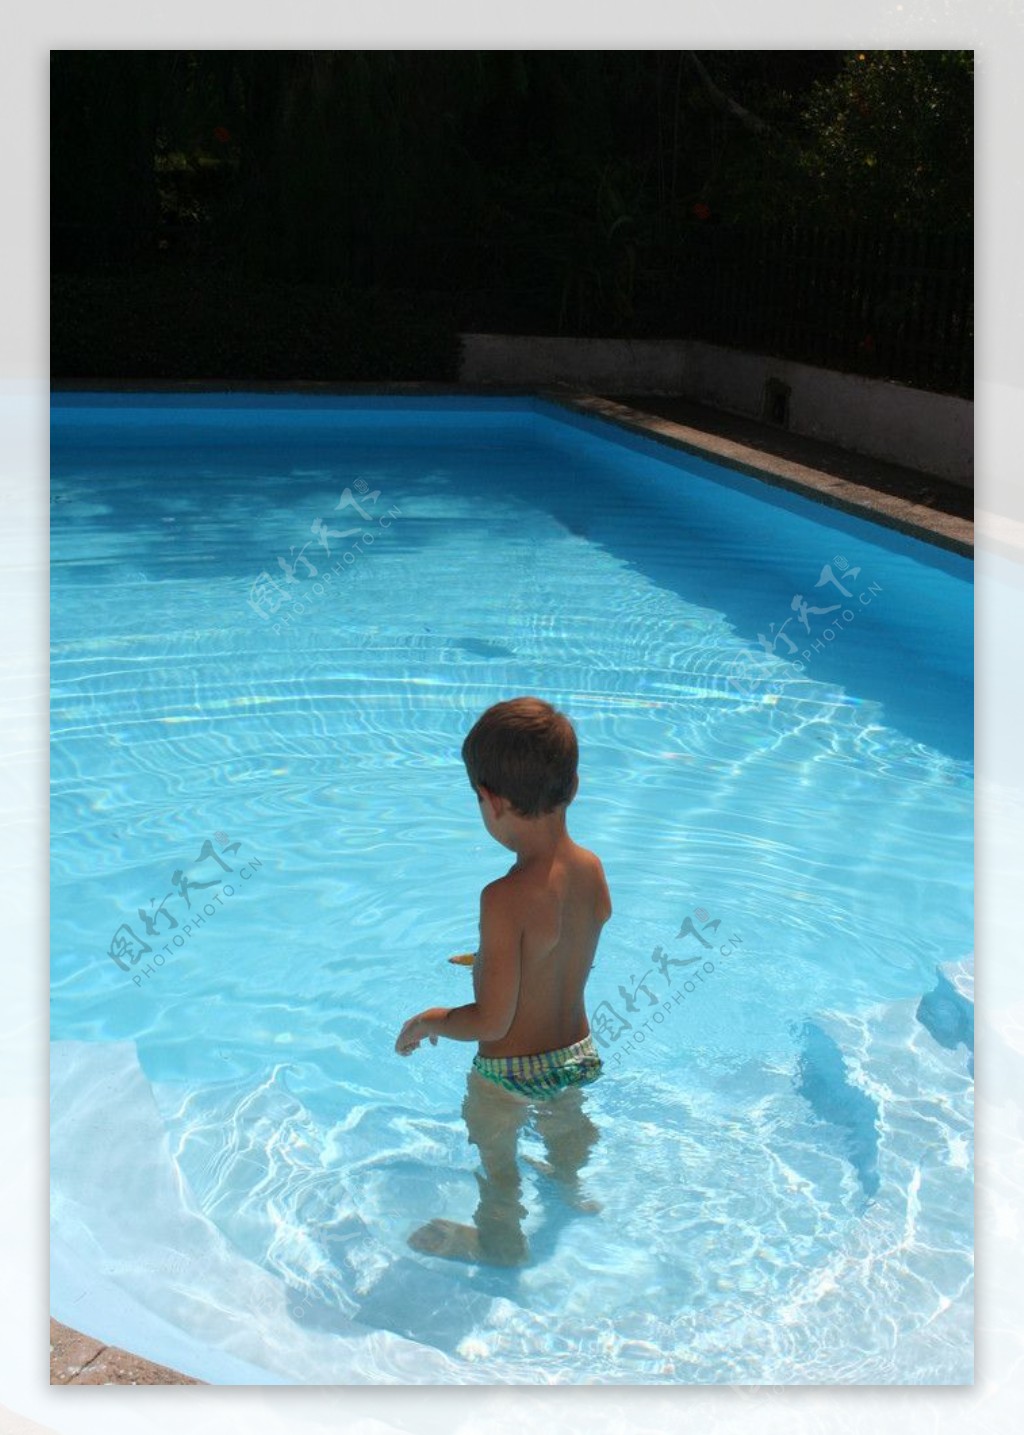 游泳池中的小孩图片